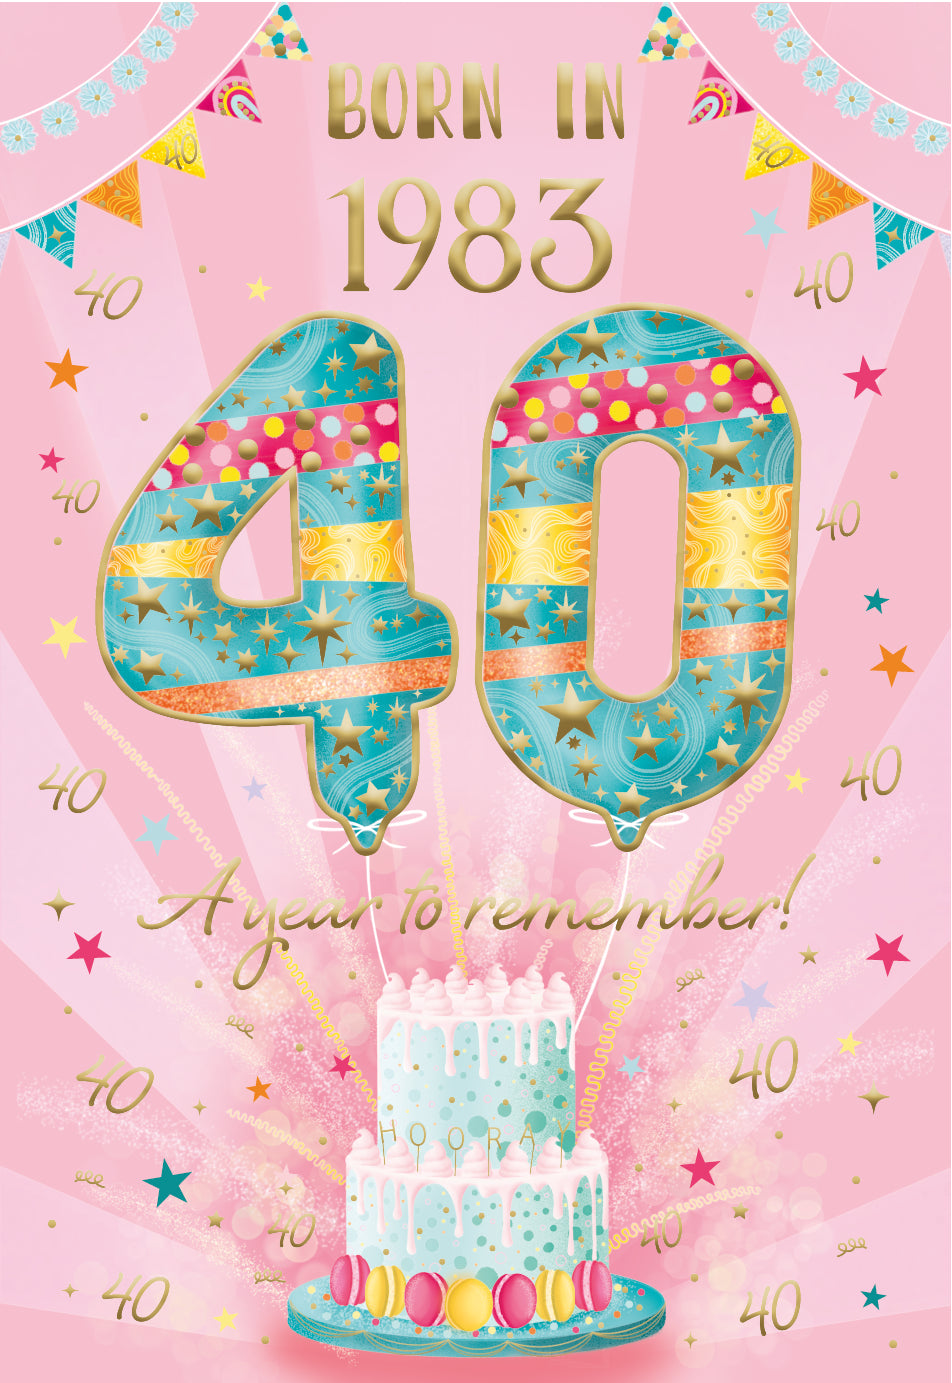 40th birthday card- born in 1983